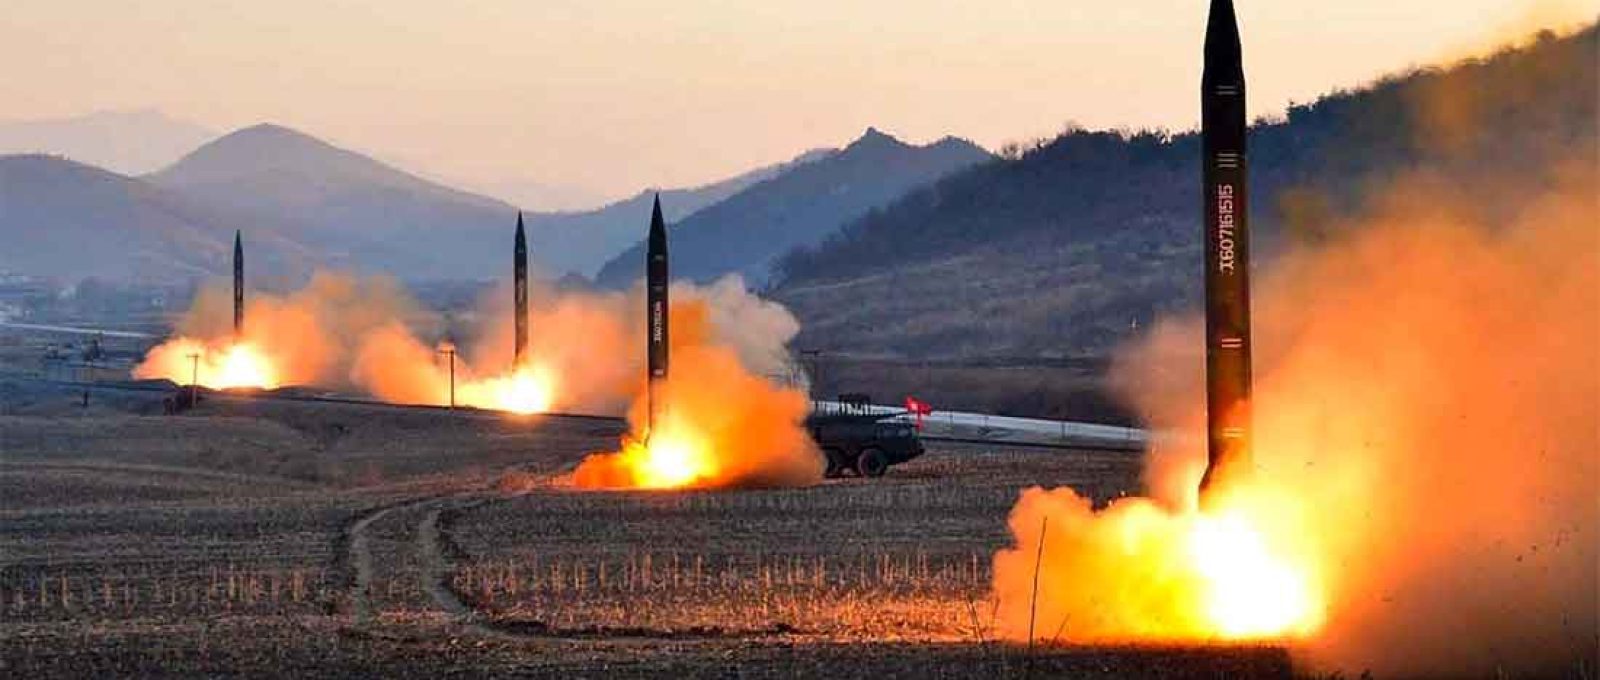 Imagem da KCNA (Agência Central de Notícias da Coreia do Norte) mostra o lançamento de quatro mísseis balísticos pelo Exército Popular Coreano durante exercício militar em local não revelado (Foto: STR/AFP/Getty Images).